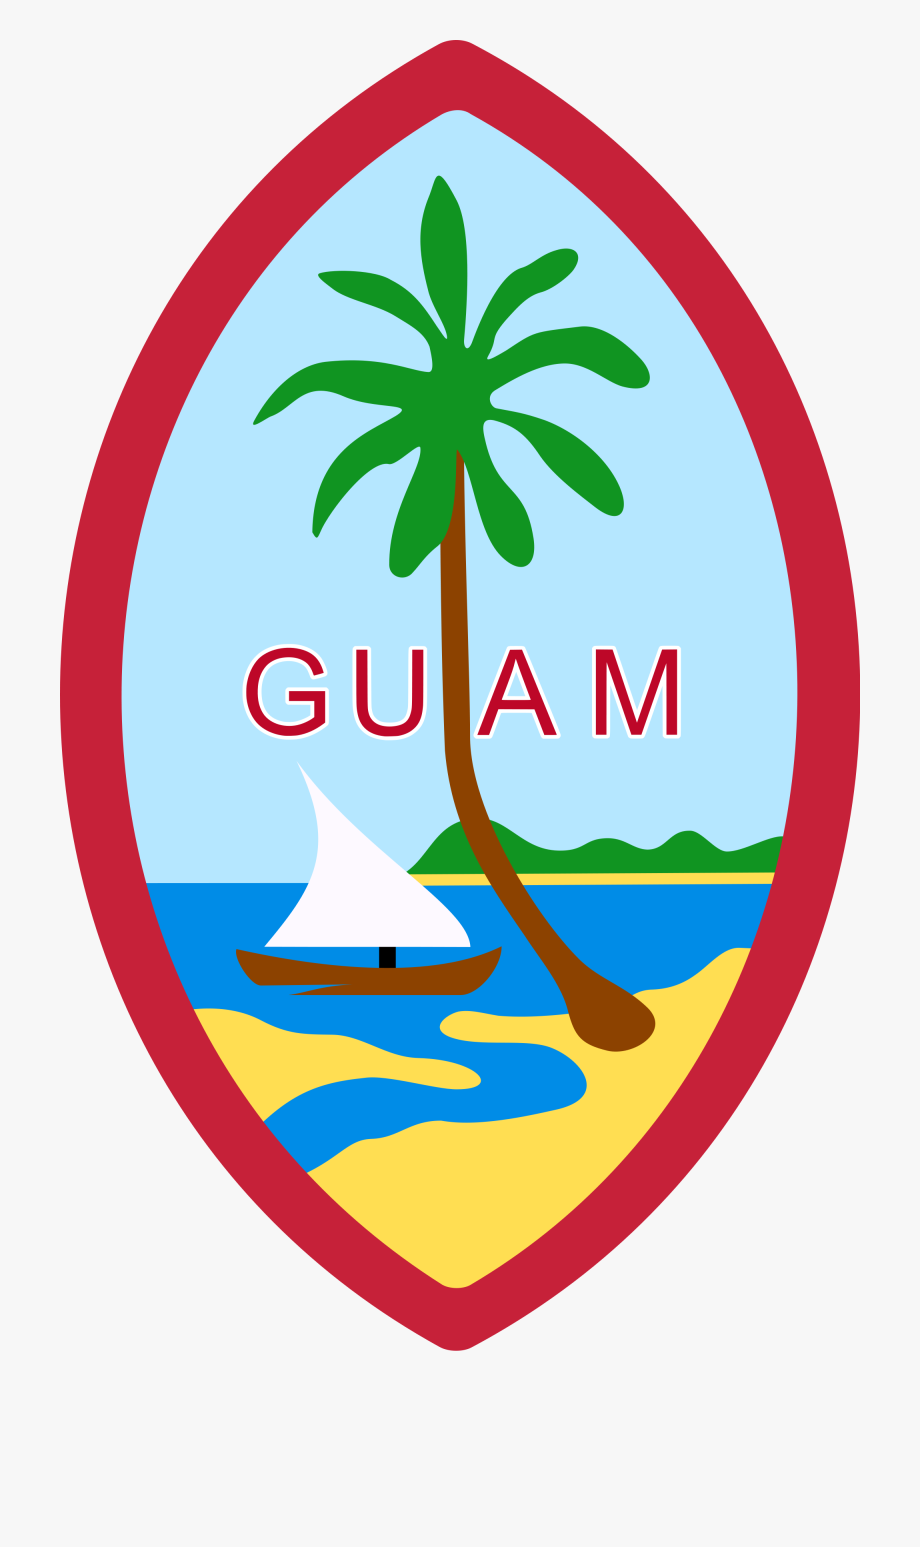 Guam - Guam Flag Clipart , Transparent Cartoon, Free Cliparts 